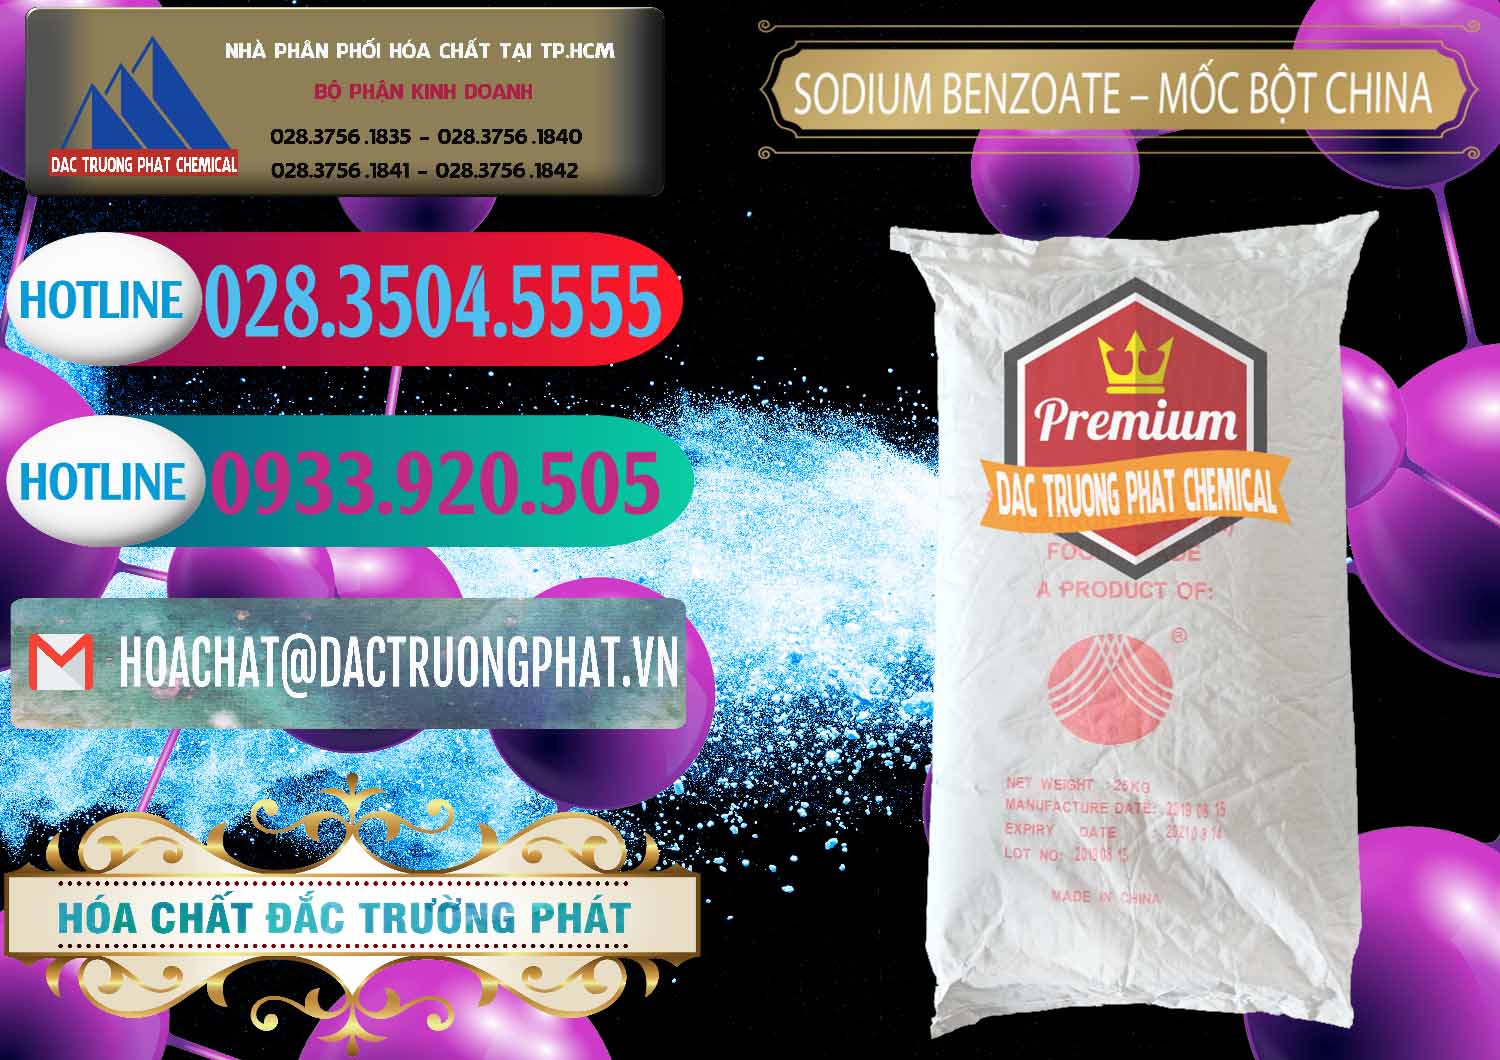 Cung cấp _ bán Sodium Benzoate - Mốc Bột Chữ Cam Food Grade Trung Quốc China - 0135 - Phân phối - kinh doanh hóa chất tại TP.HCM - truongphat.vn